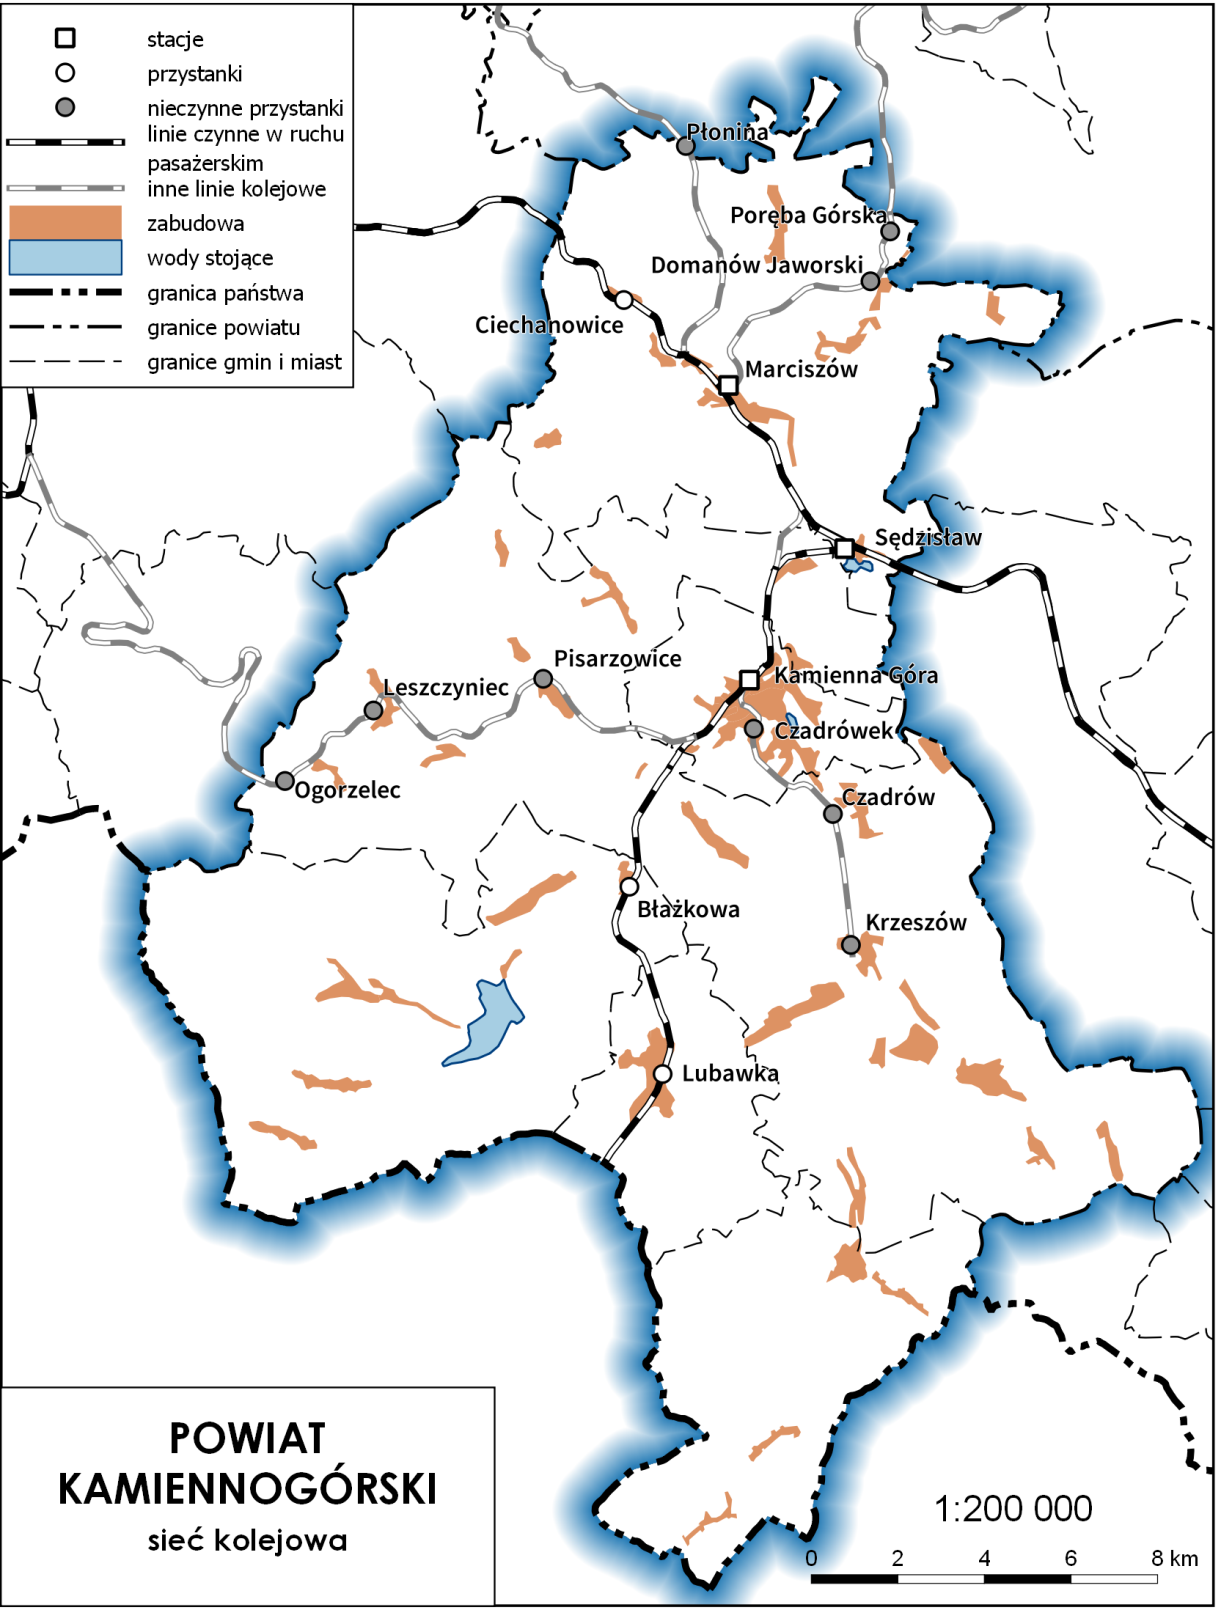 Plan zrównoważonego rozwoju publicznego transportu zbiorowego dla Powiatu Kamiennogórskiego Rys. 4.1.1 Sied kolejowa na obszarze powiatu kamiennogórskiego.